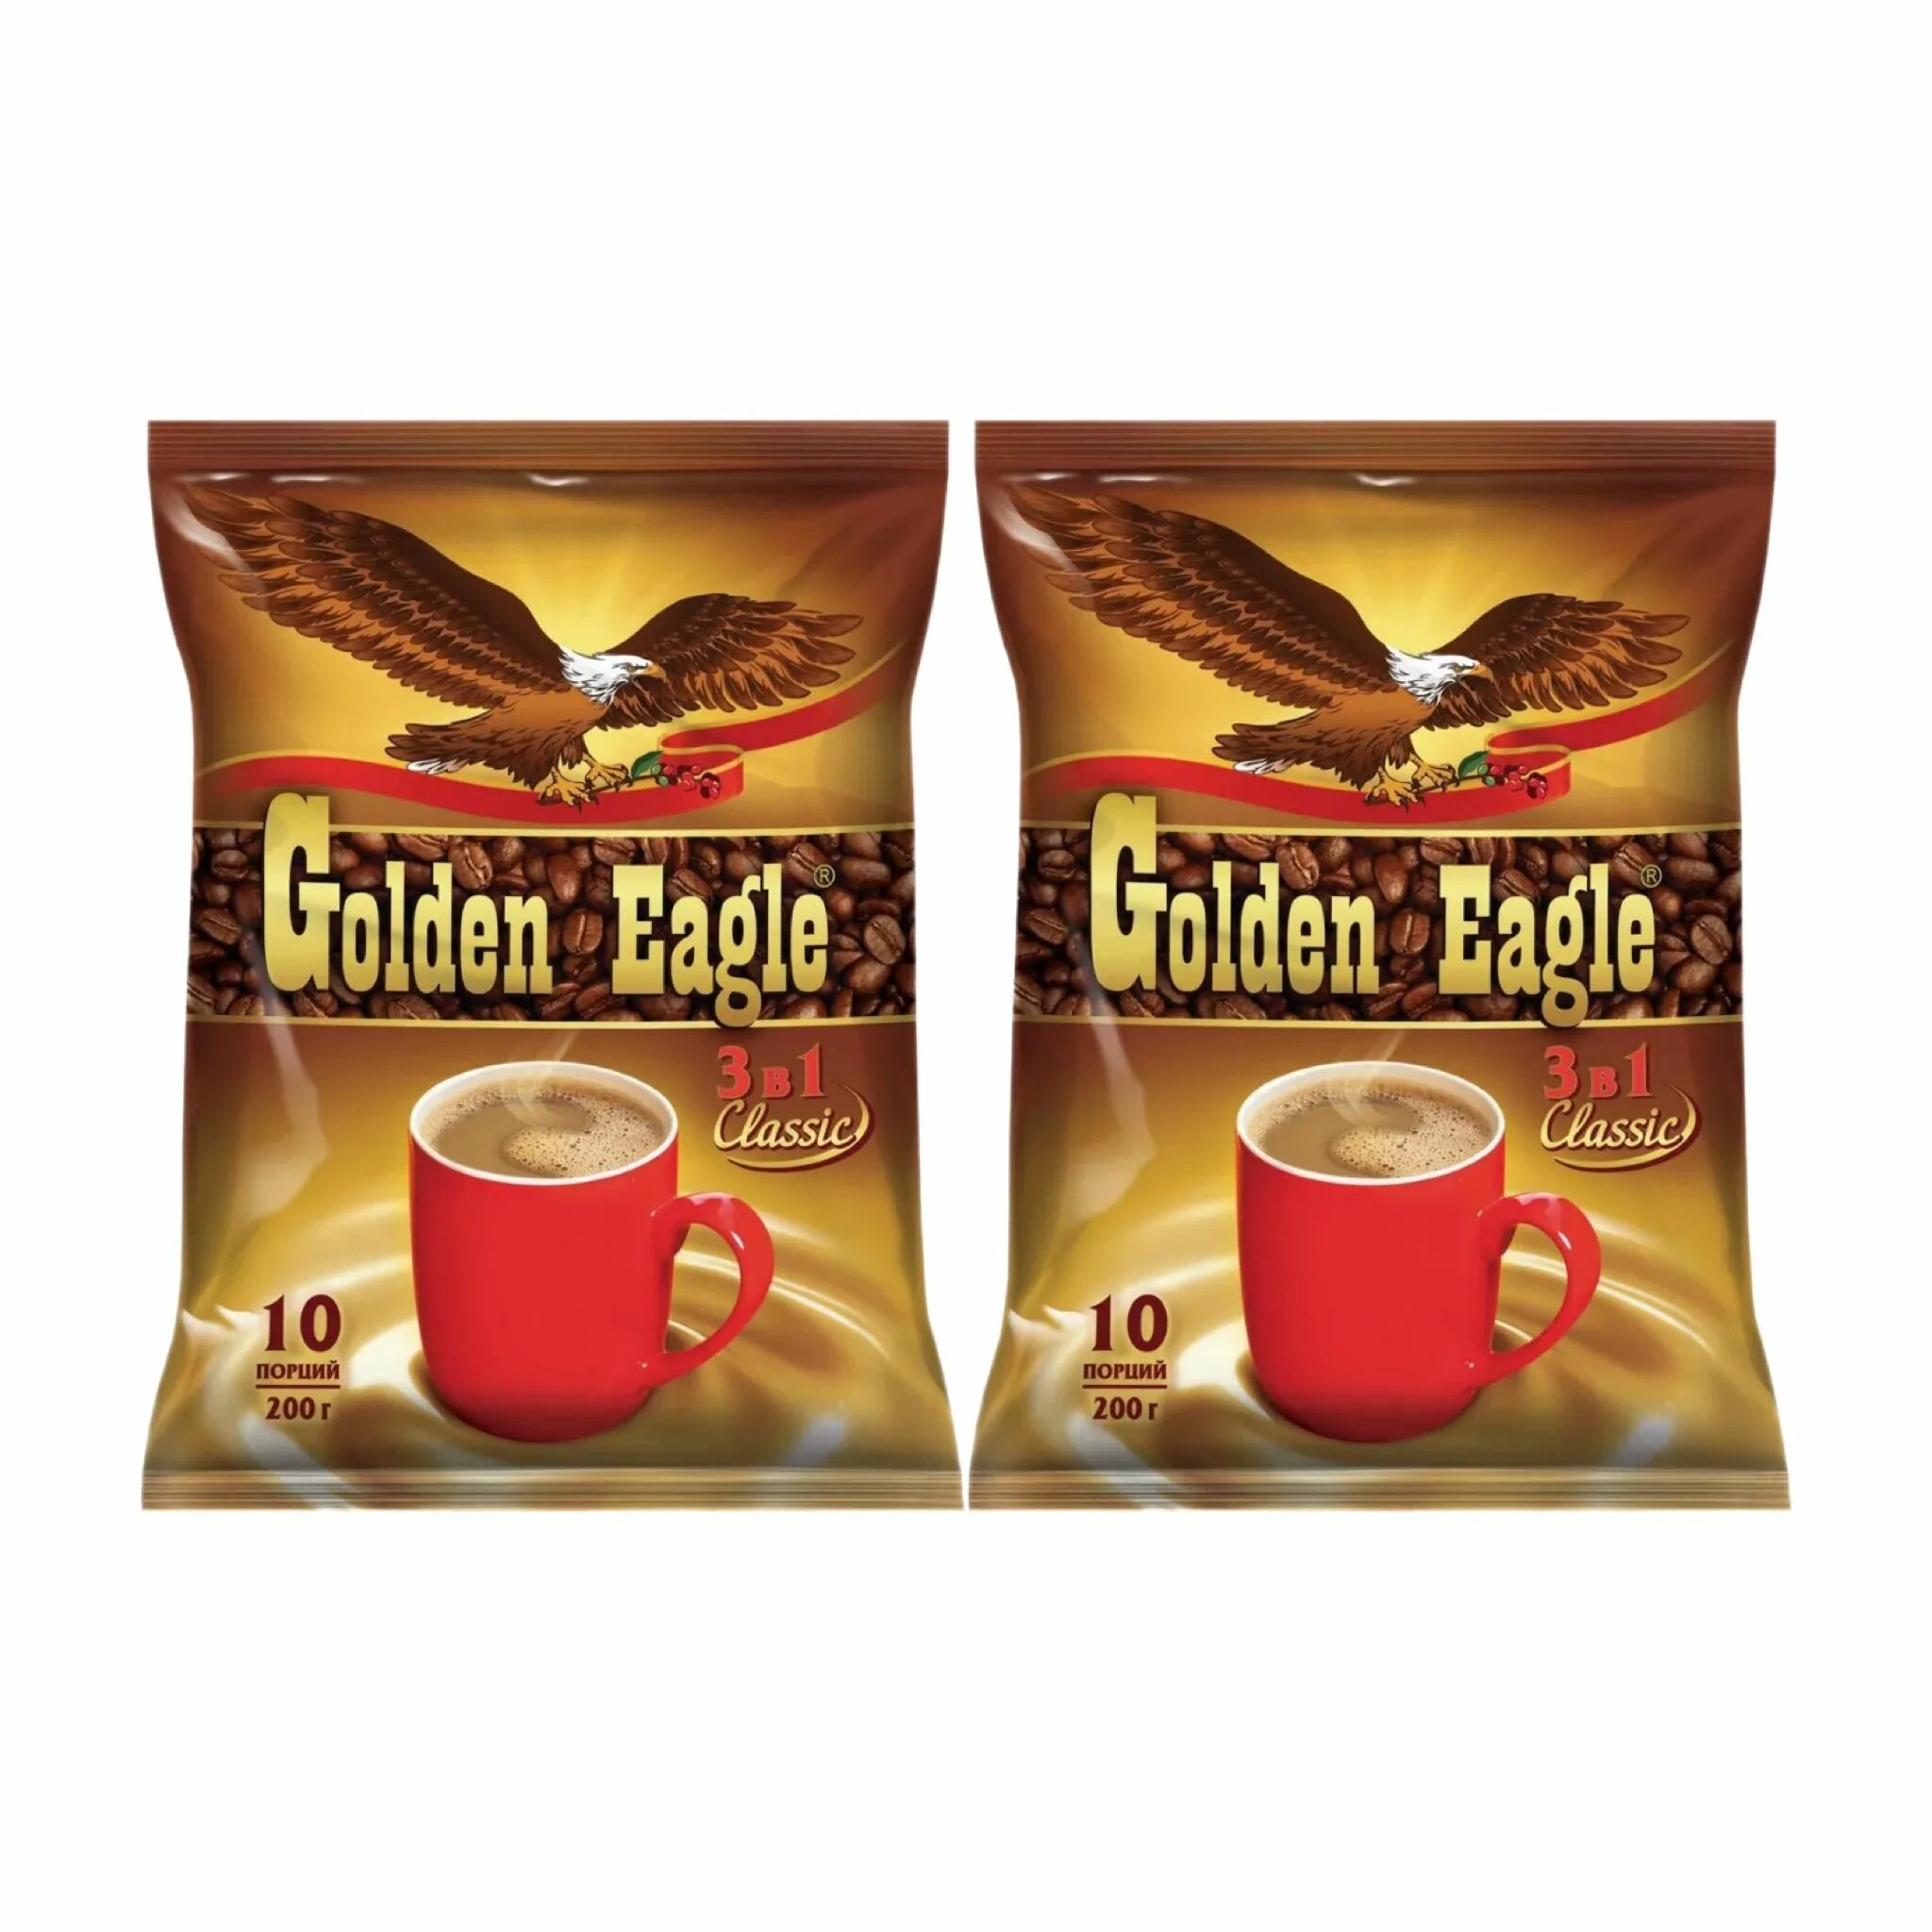 Кофе игл. Кофейный напиток Голден игл 3в1 50п. Golden Eagle кофе 3 в 1. 3 В 1 Голден игл. Кофе 3/1 в пакетиках Голден игл.